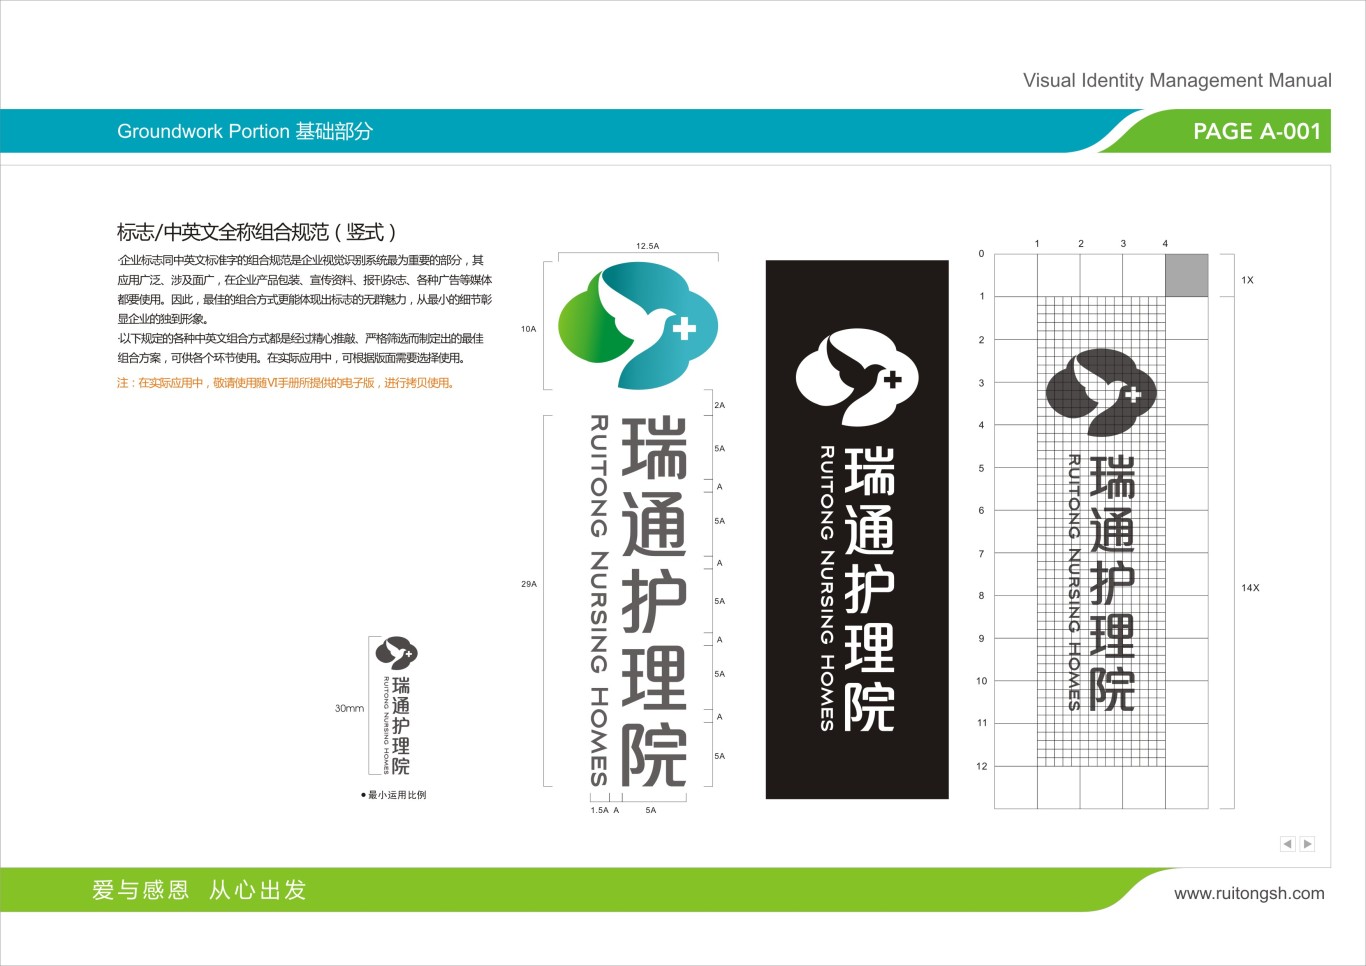 上海瑞通护理院标志VI设计图27